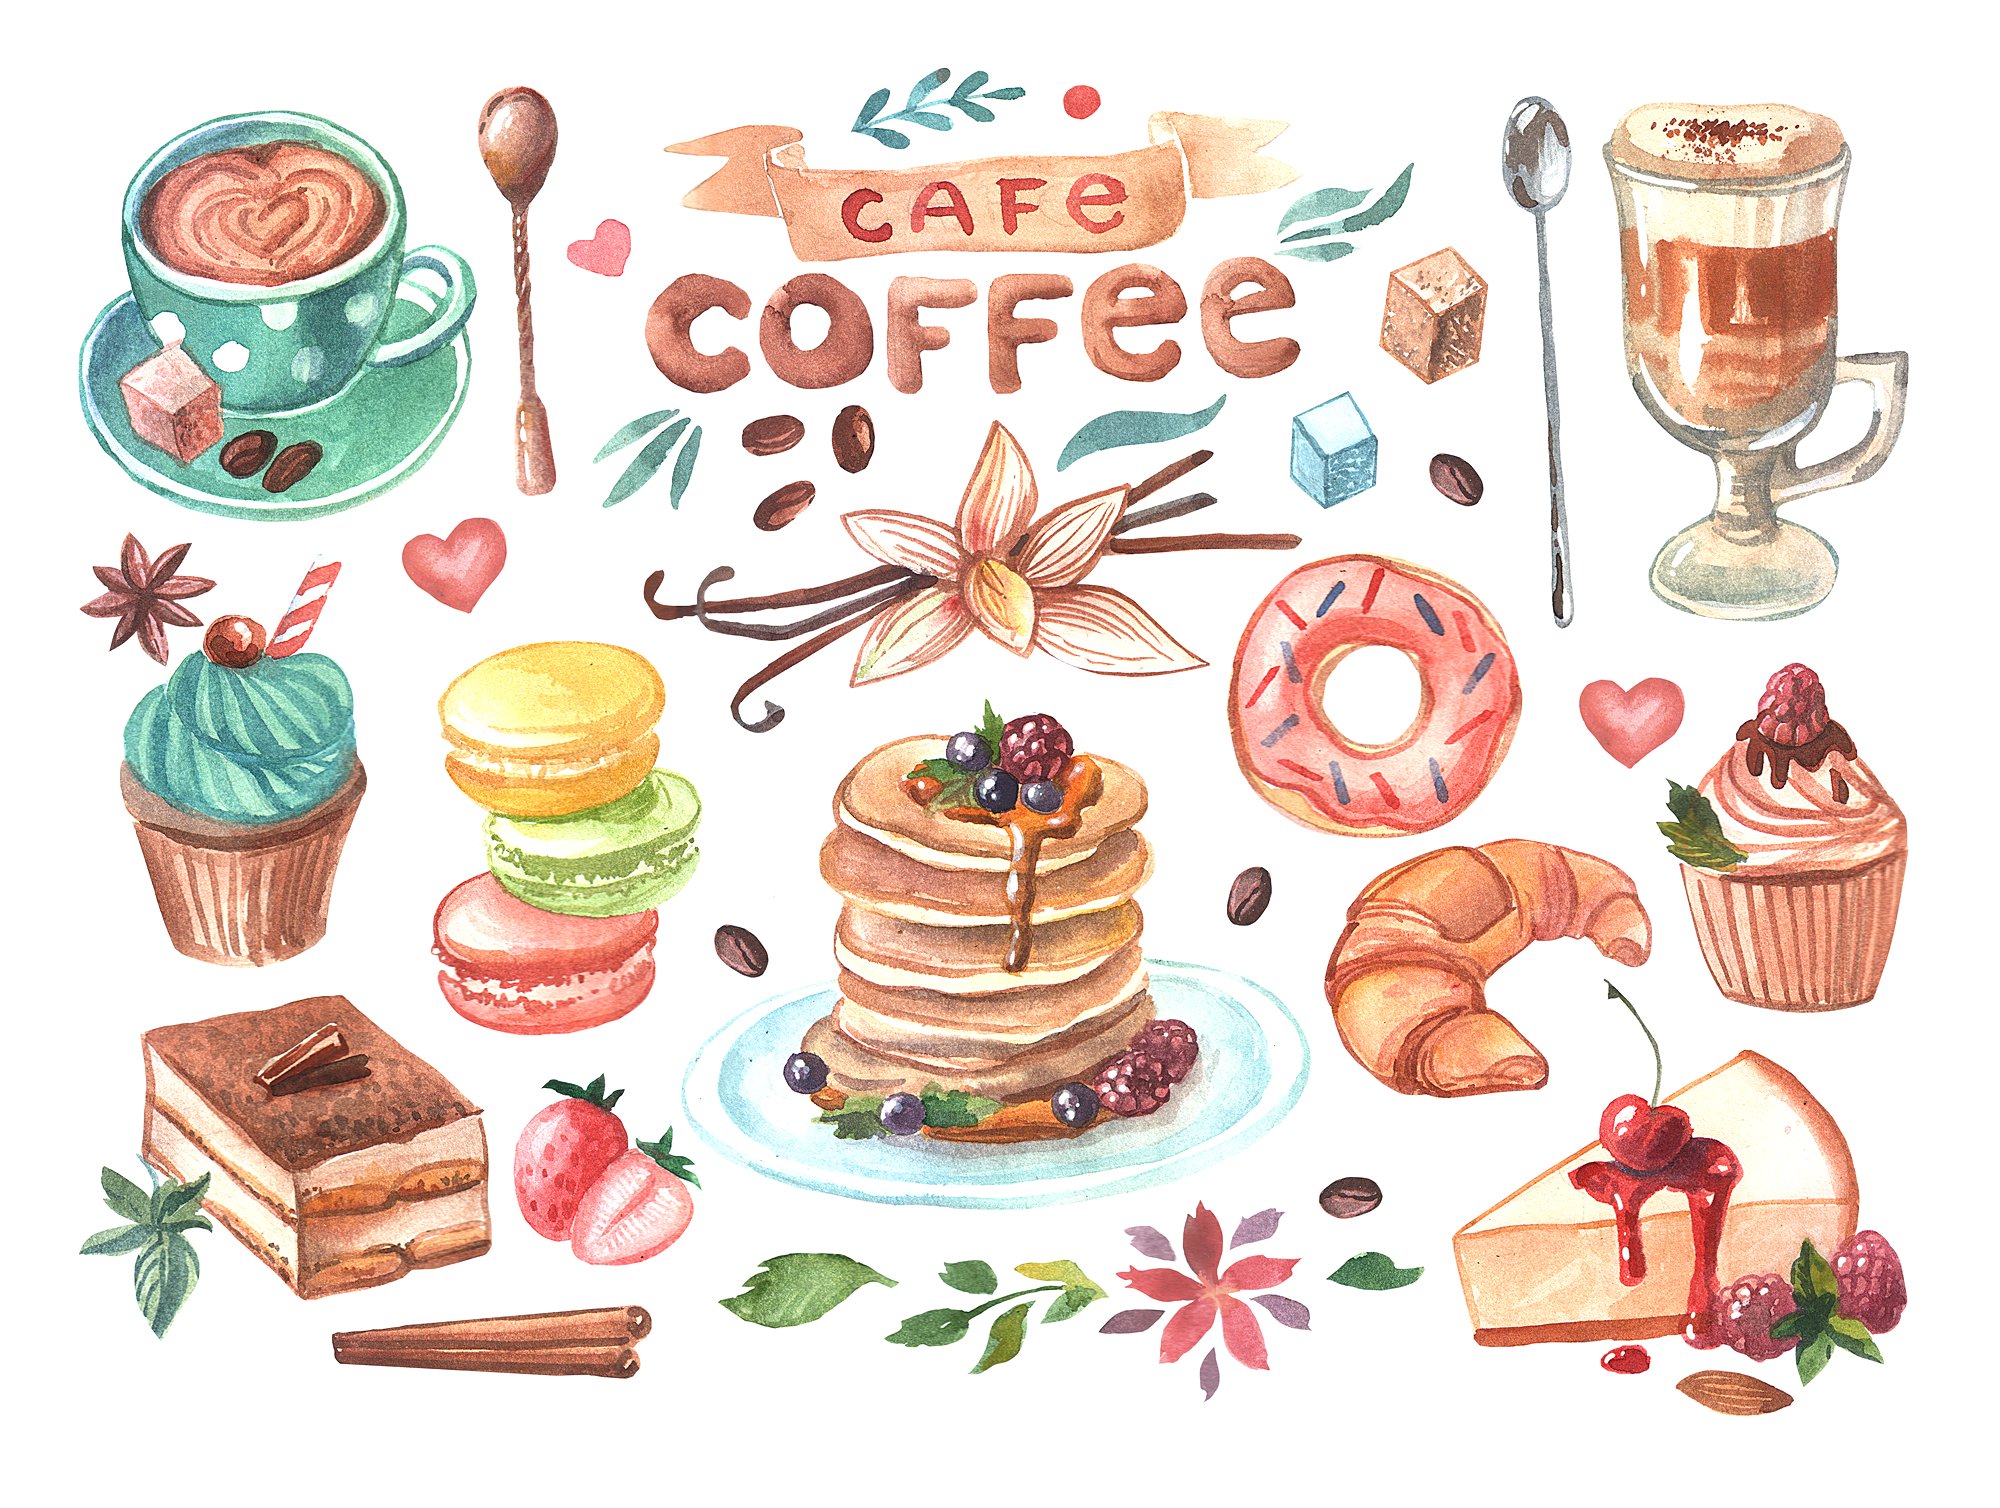 高质量的手绘水彩画咖啡&甜品图集下载[psd,png,jpg]插图1